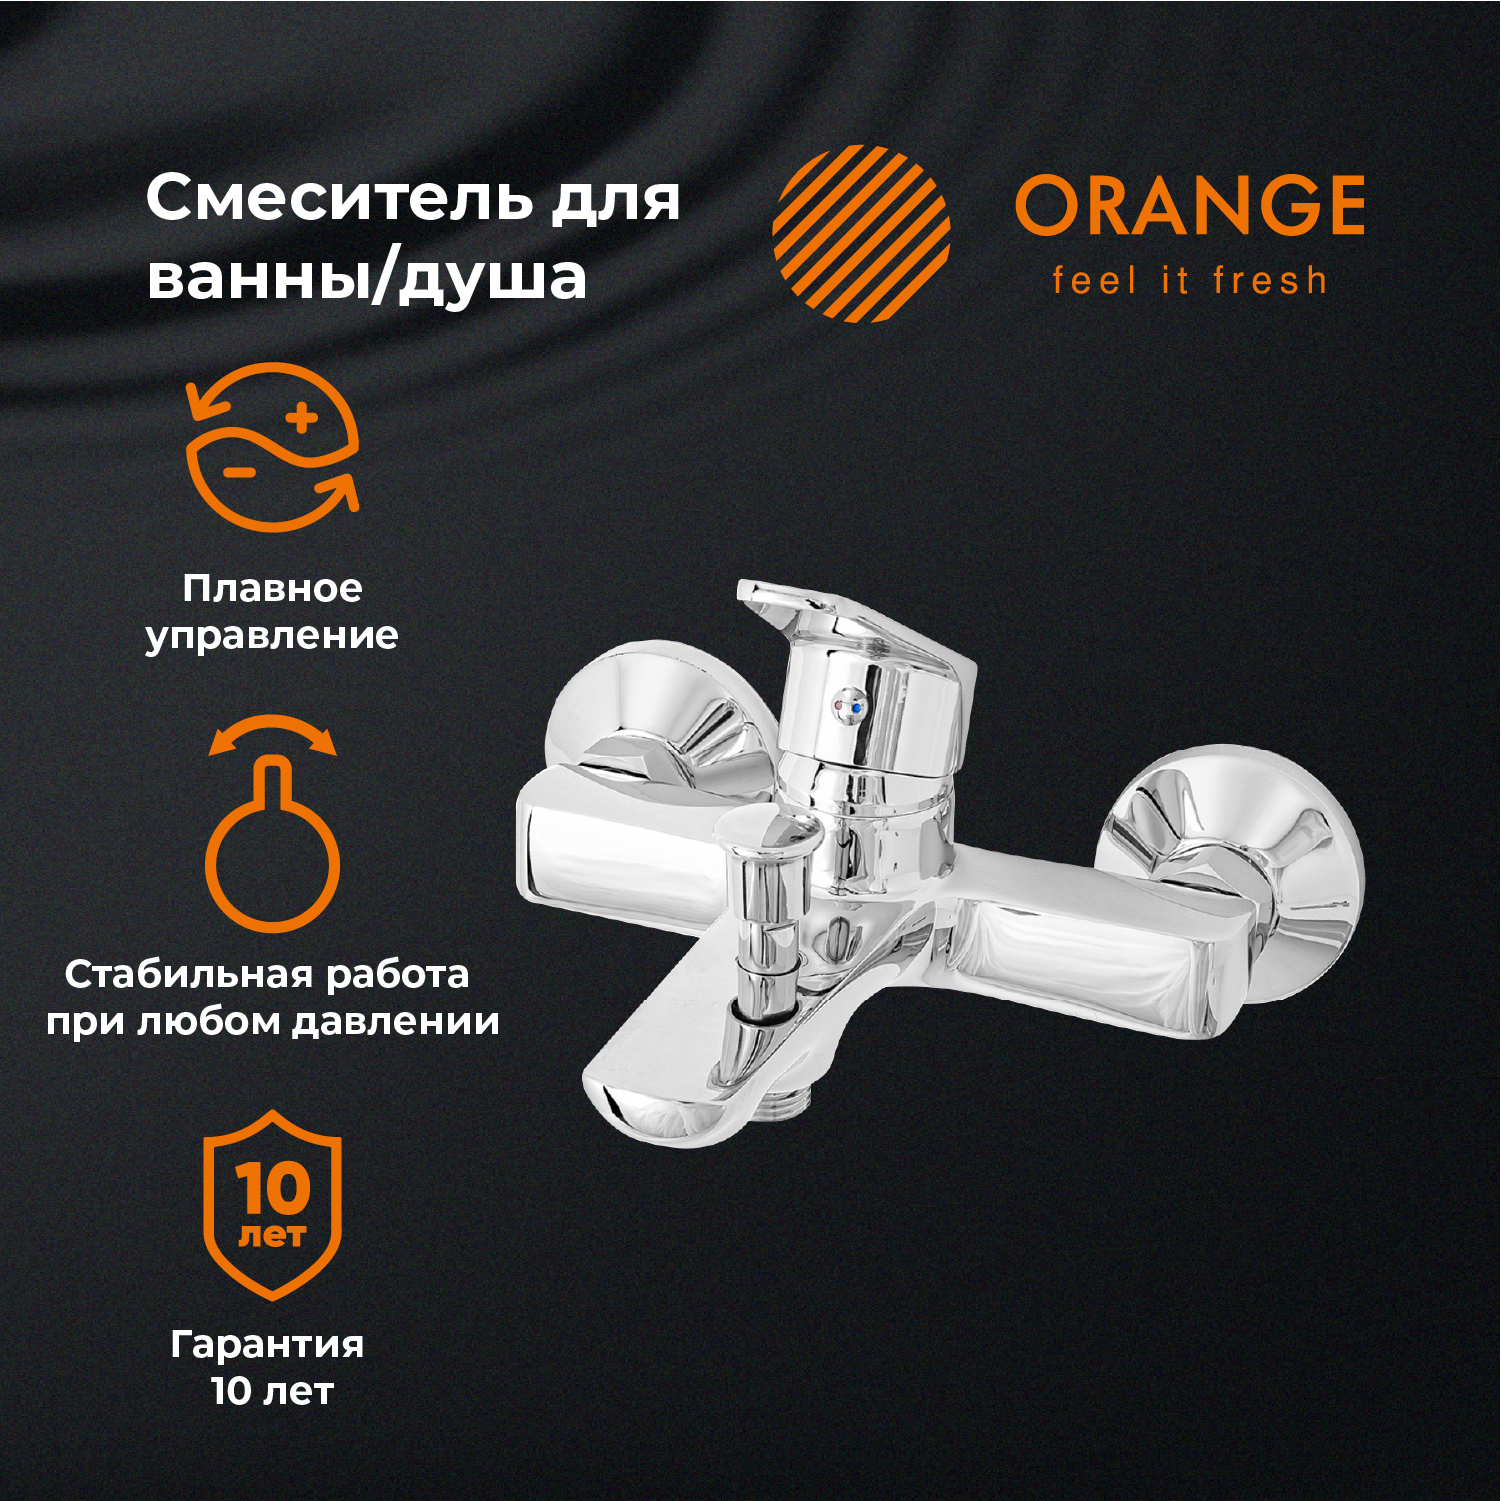 Смеситель для ванны и душа Orange FELIX M14-100cr цвет хром очиститель карбюратора felix